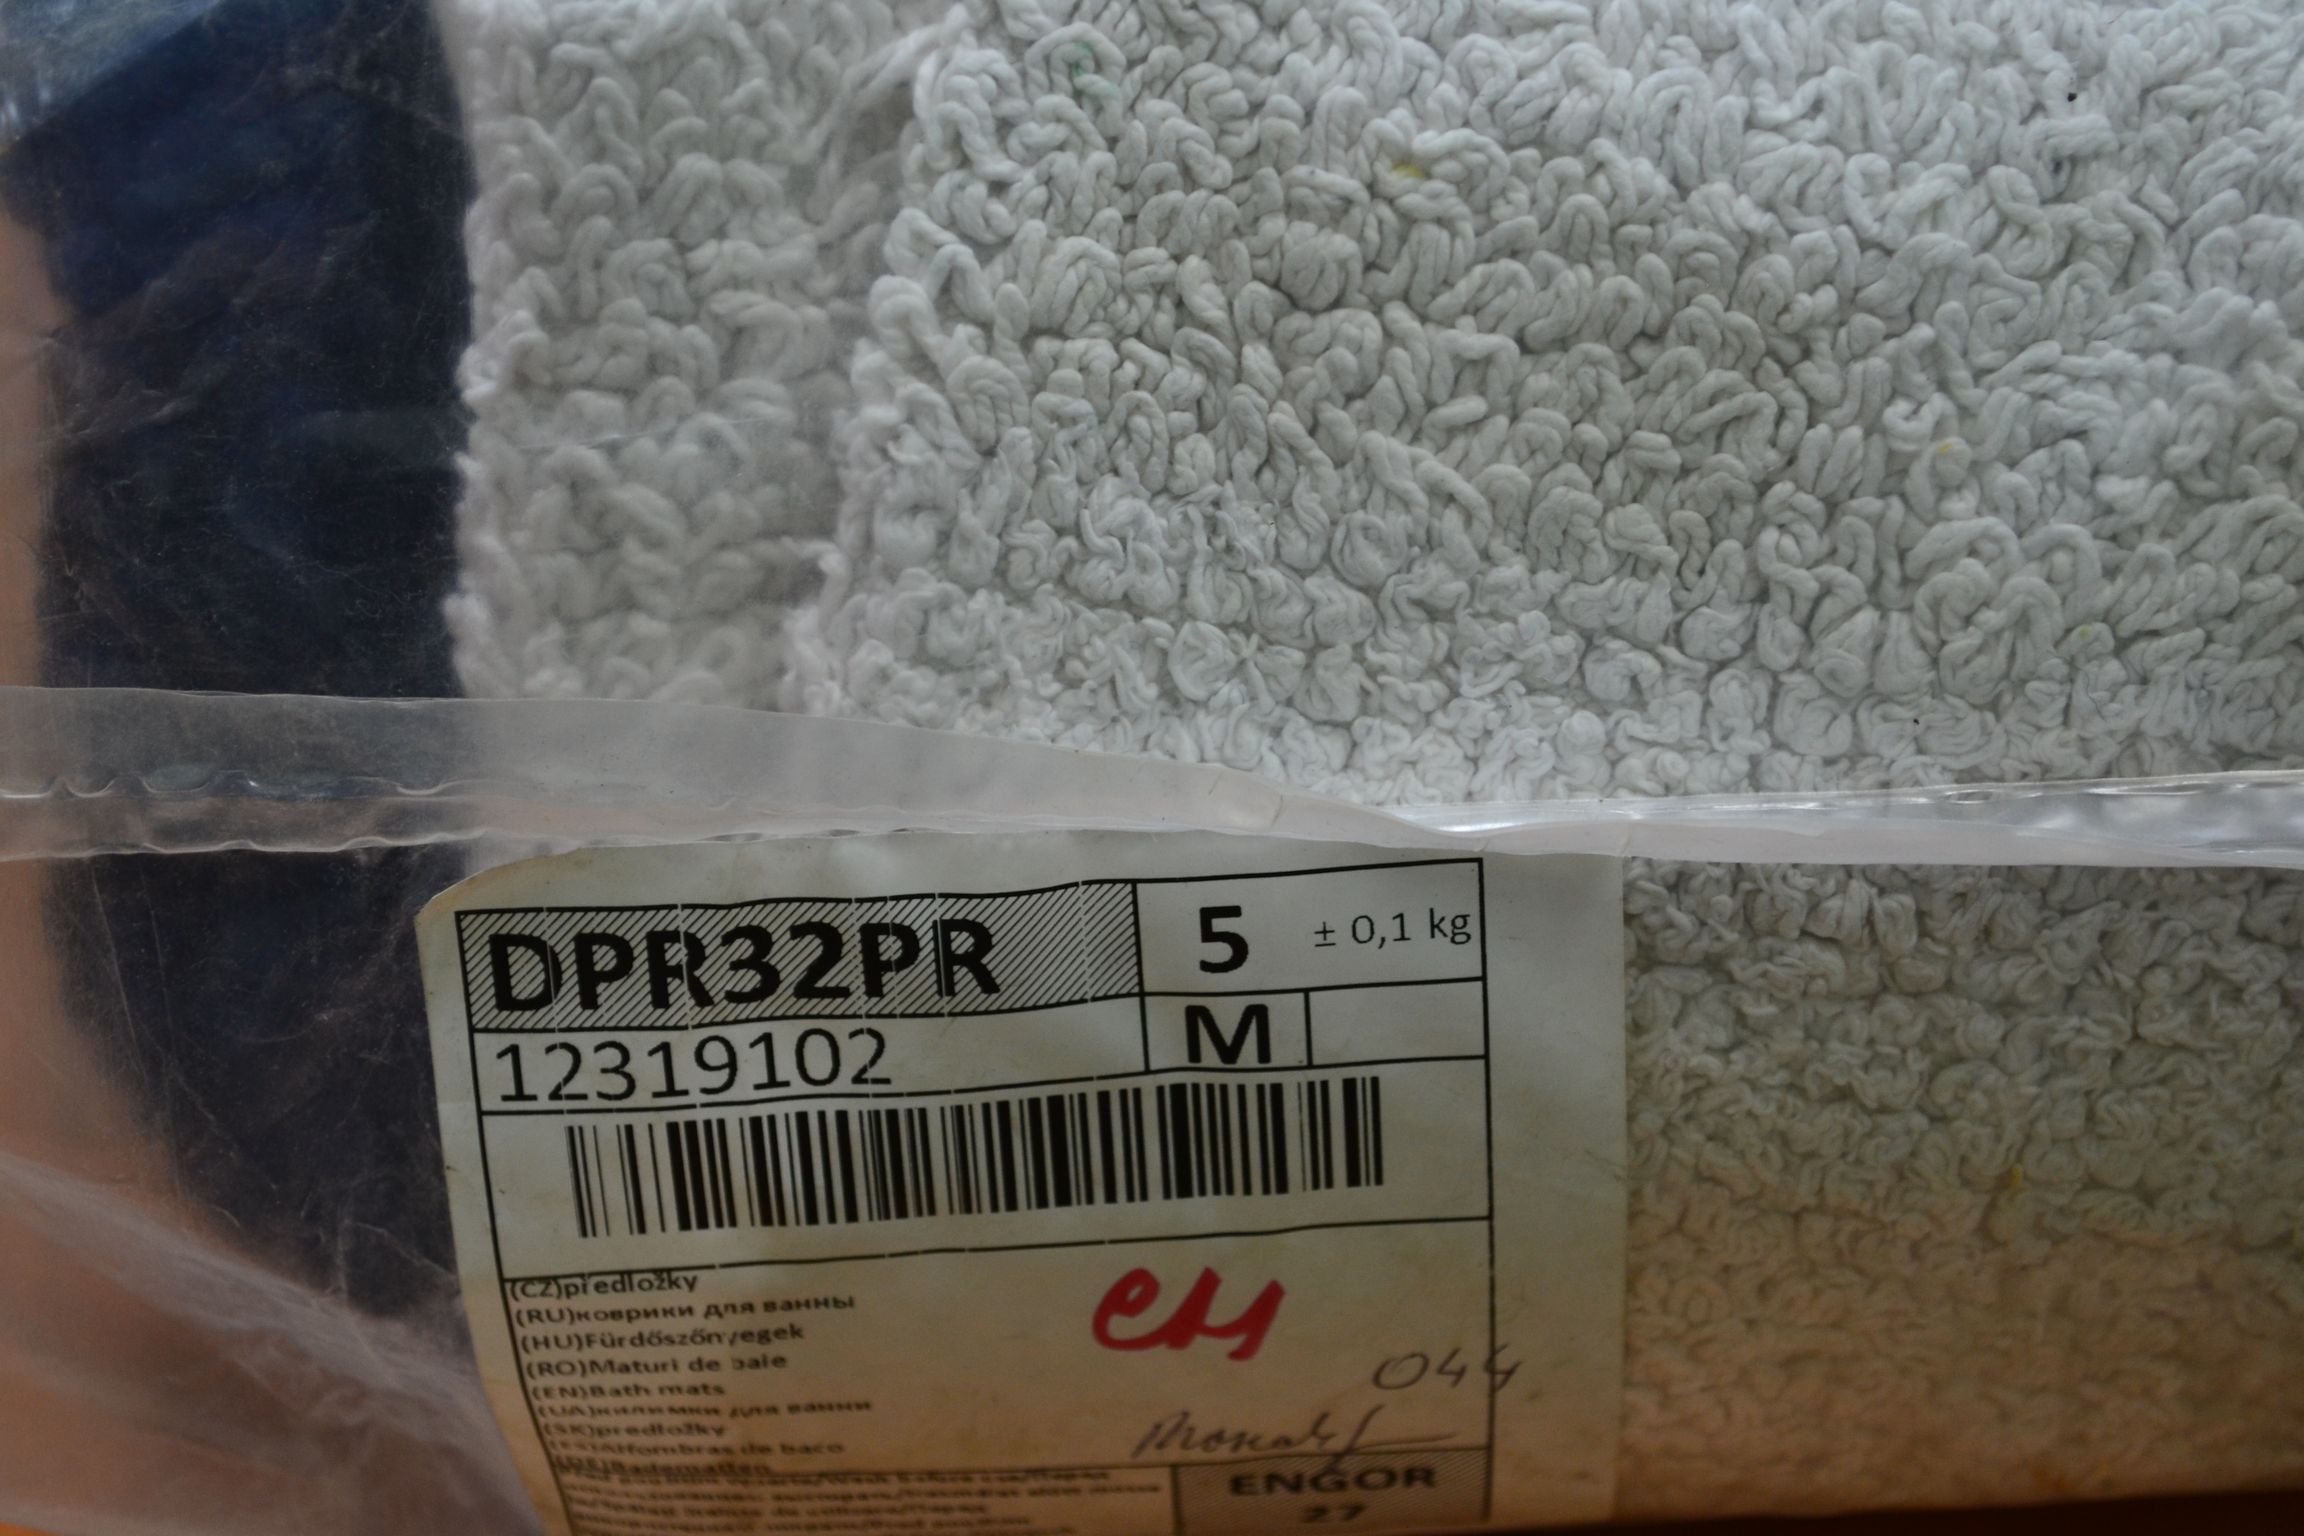 DPR32PR Коврики для ванны; код мешка 12319102